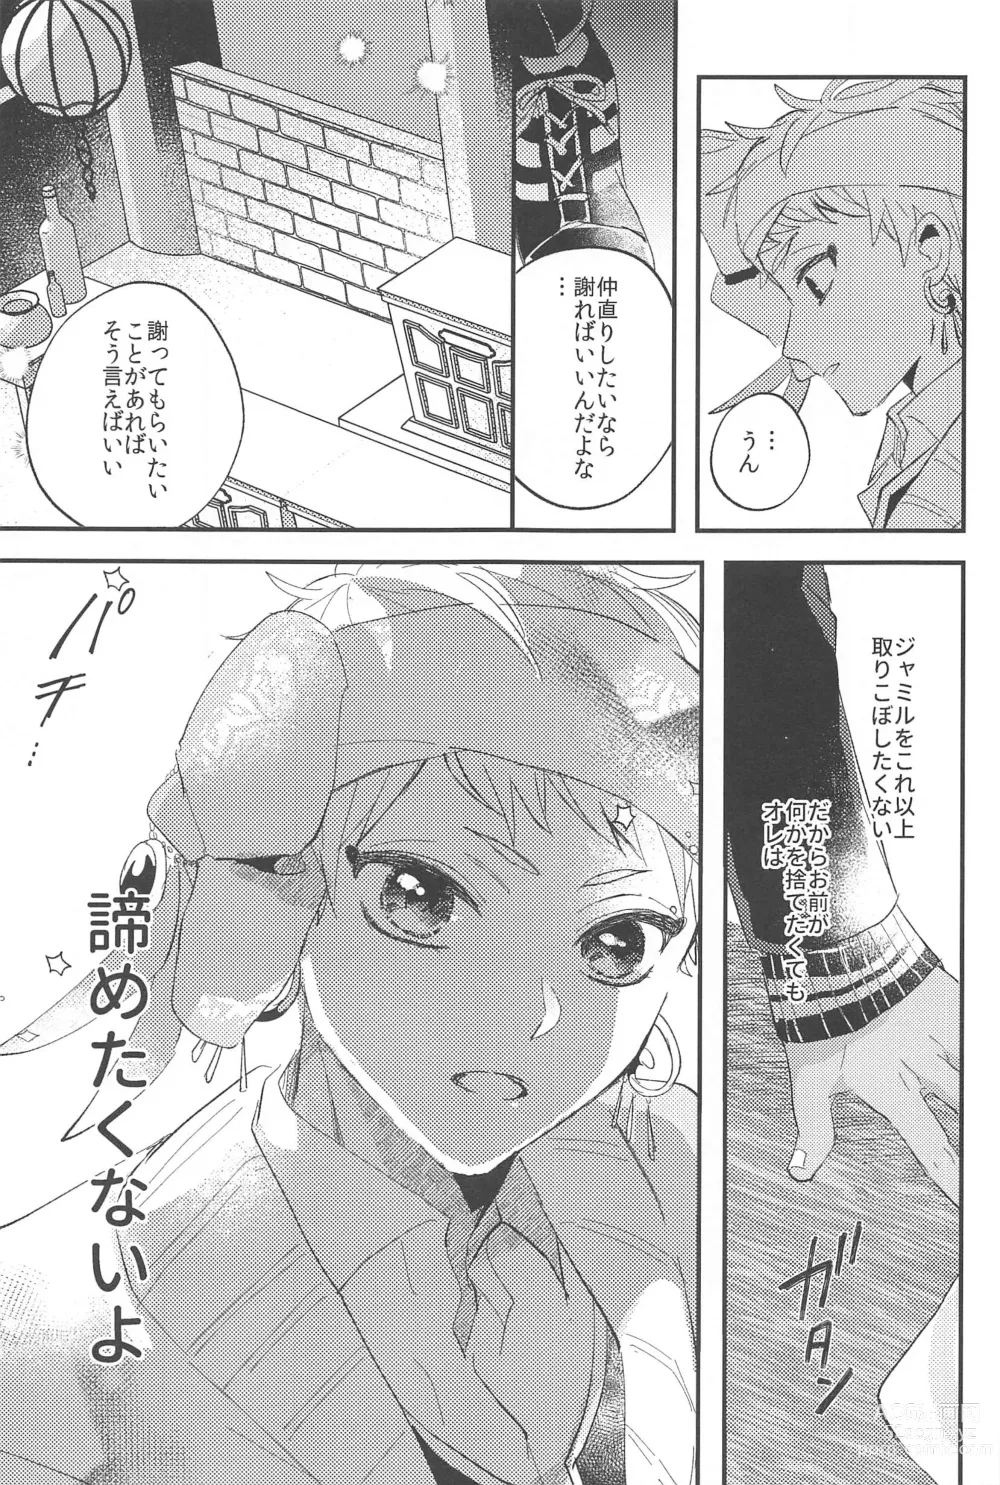 Page 31 of doujinshi Kantan dakara Muzukashii